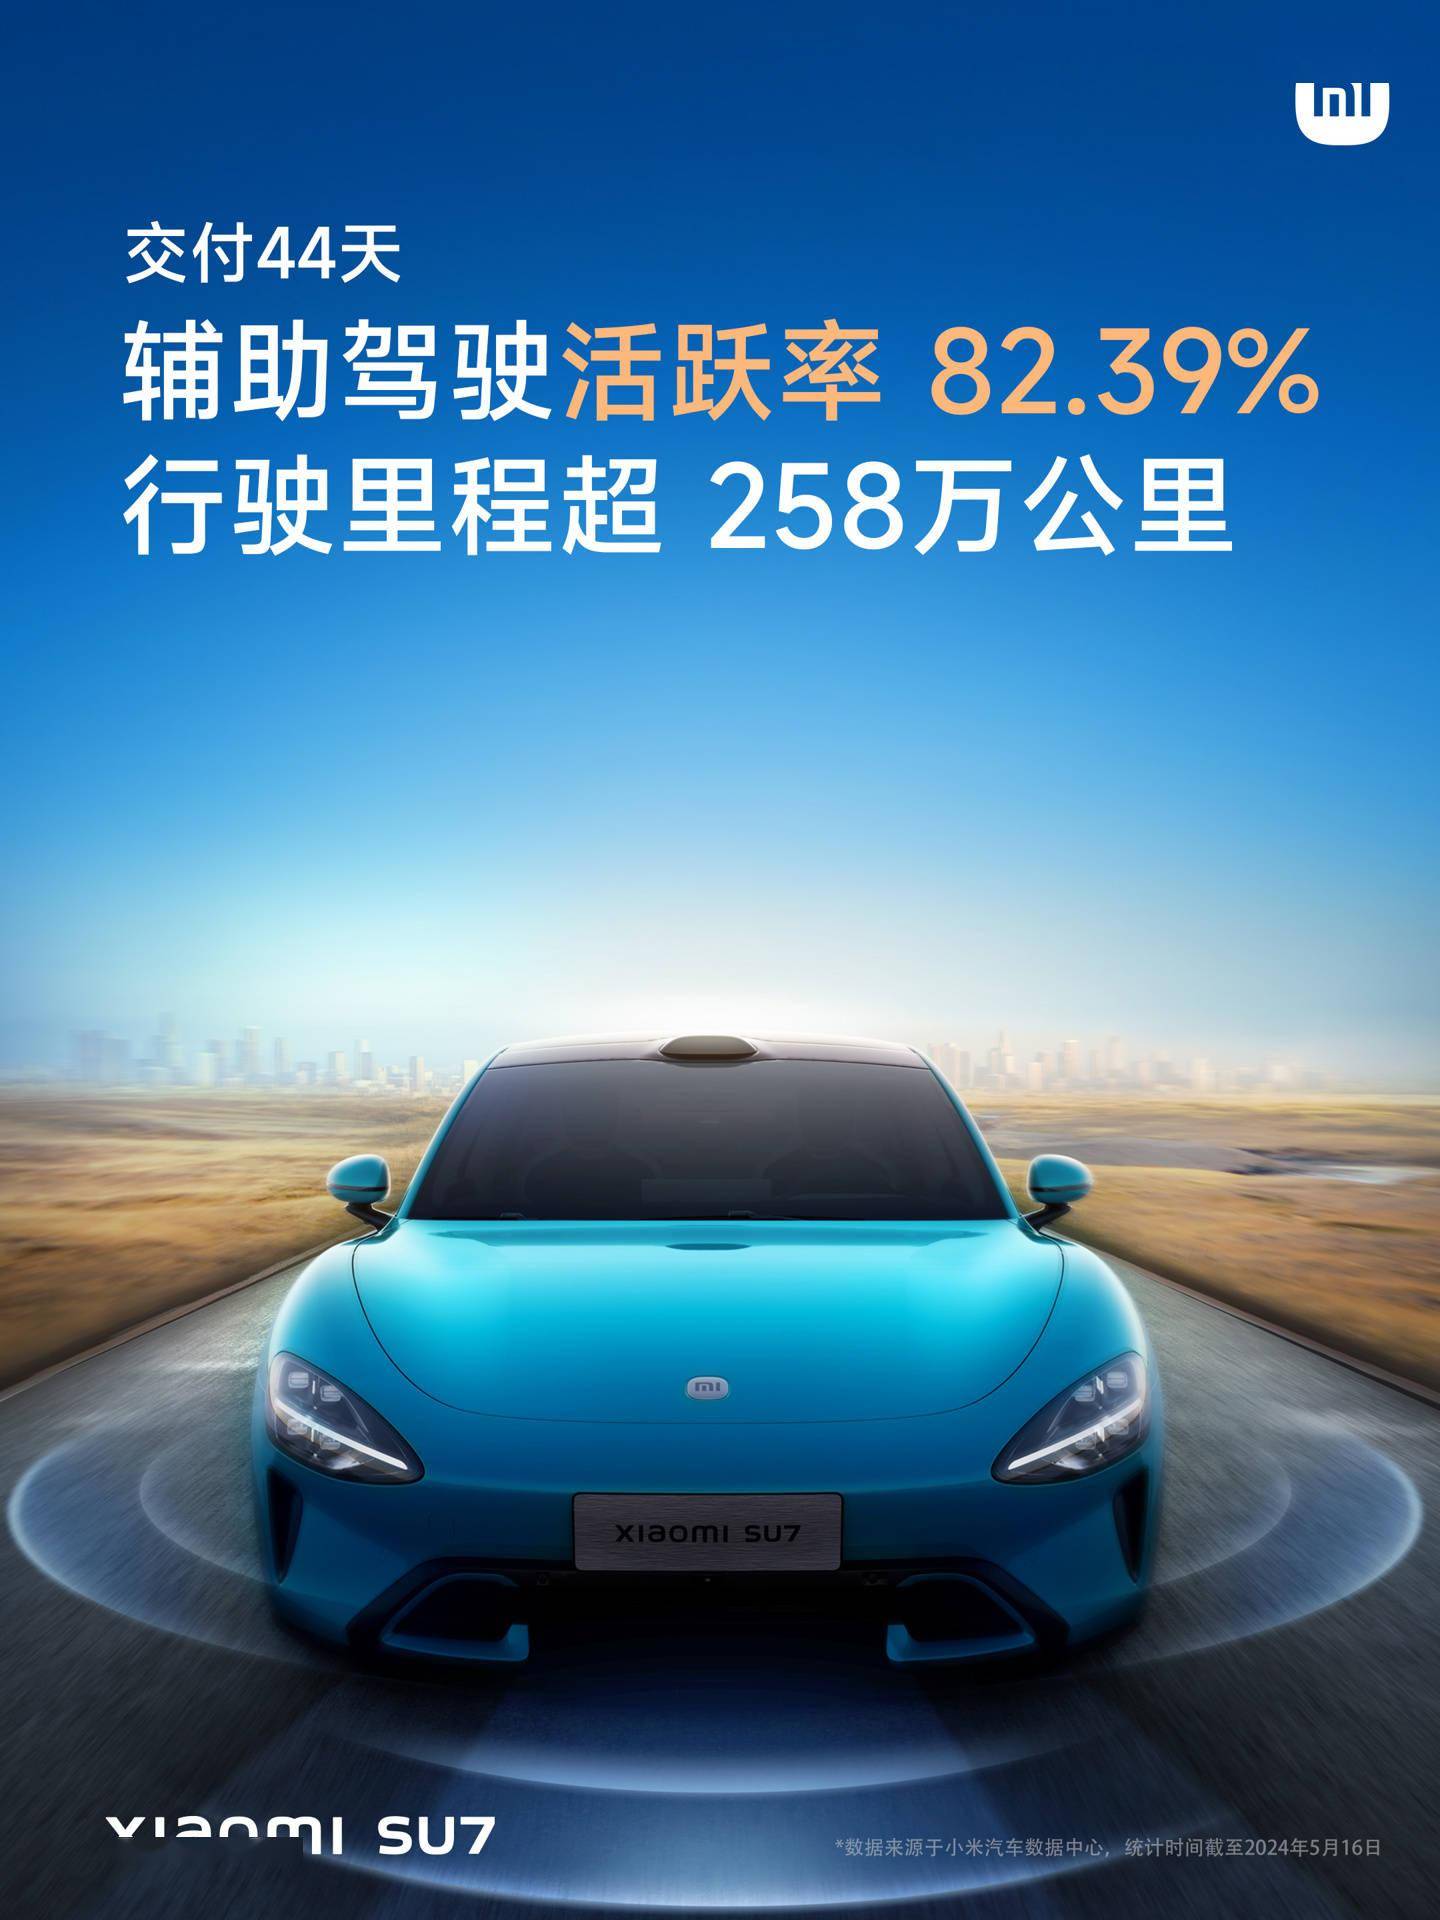 雷军：小米汽车 SU7 智能驾驶开启交付 44 天， 激活率达 82.39%